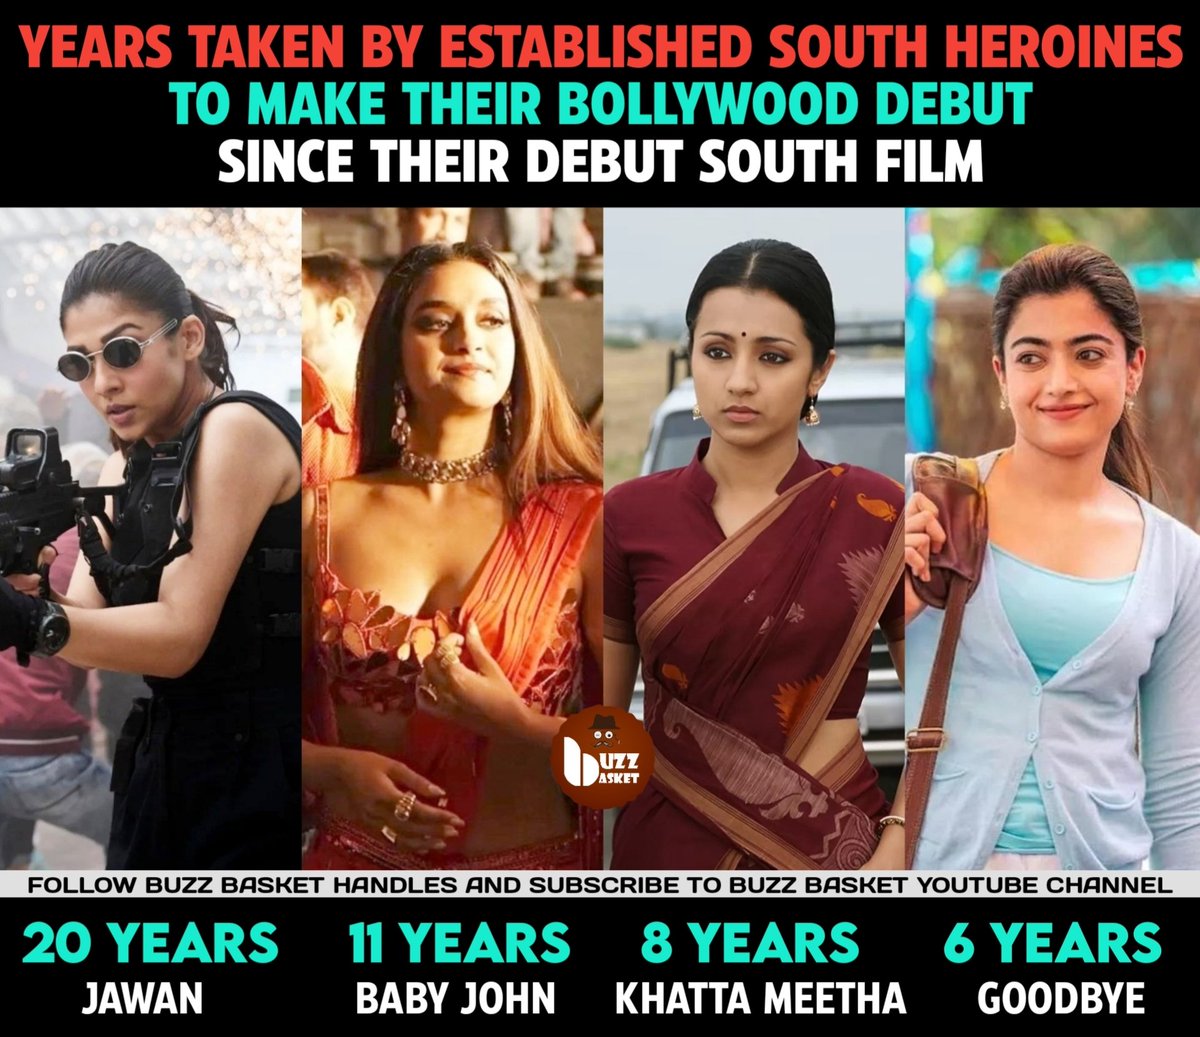 Years taken by established South Heroines to make their #Bollywood Debut. #Nayanthara #Jawan #KeerthySuresh #BabyJohn #Trisha #KhattaMeetha #Rashmika #RashmikaMandanna #Goodbye